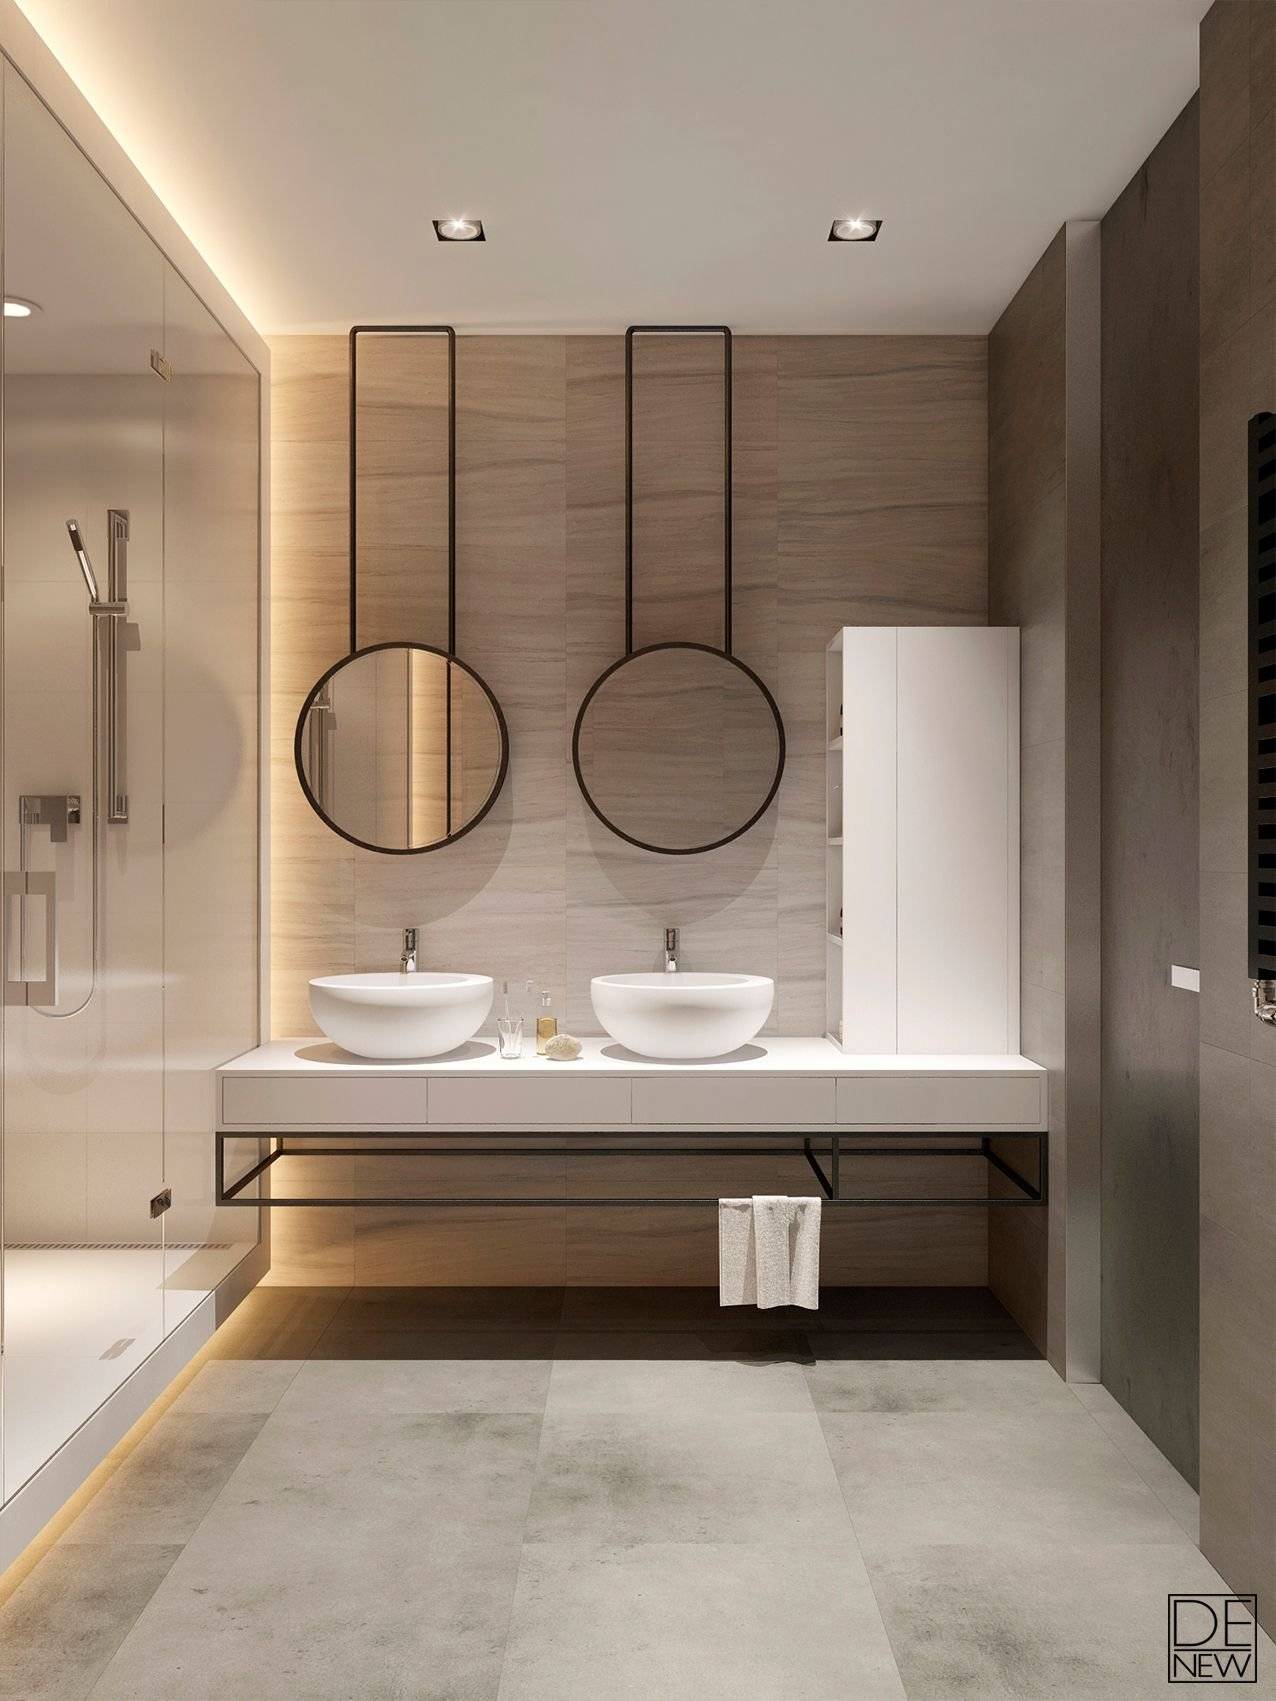 Ванная комната в серых тонах – как продумать дизайн